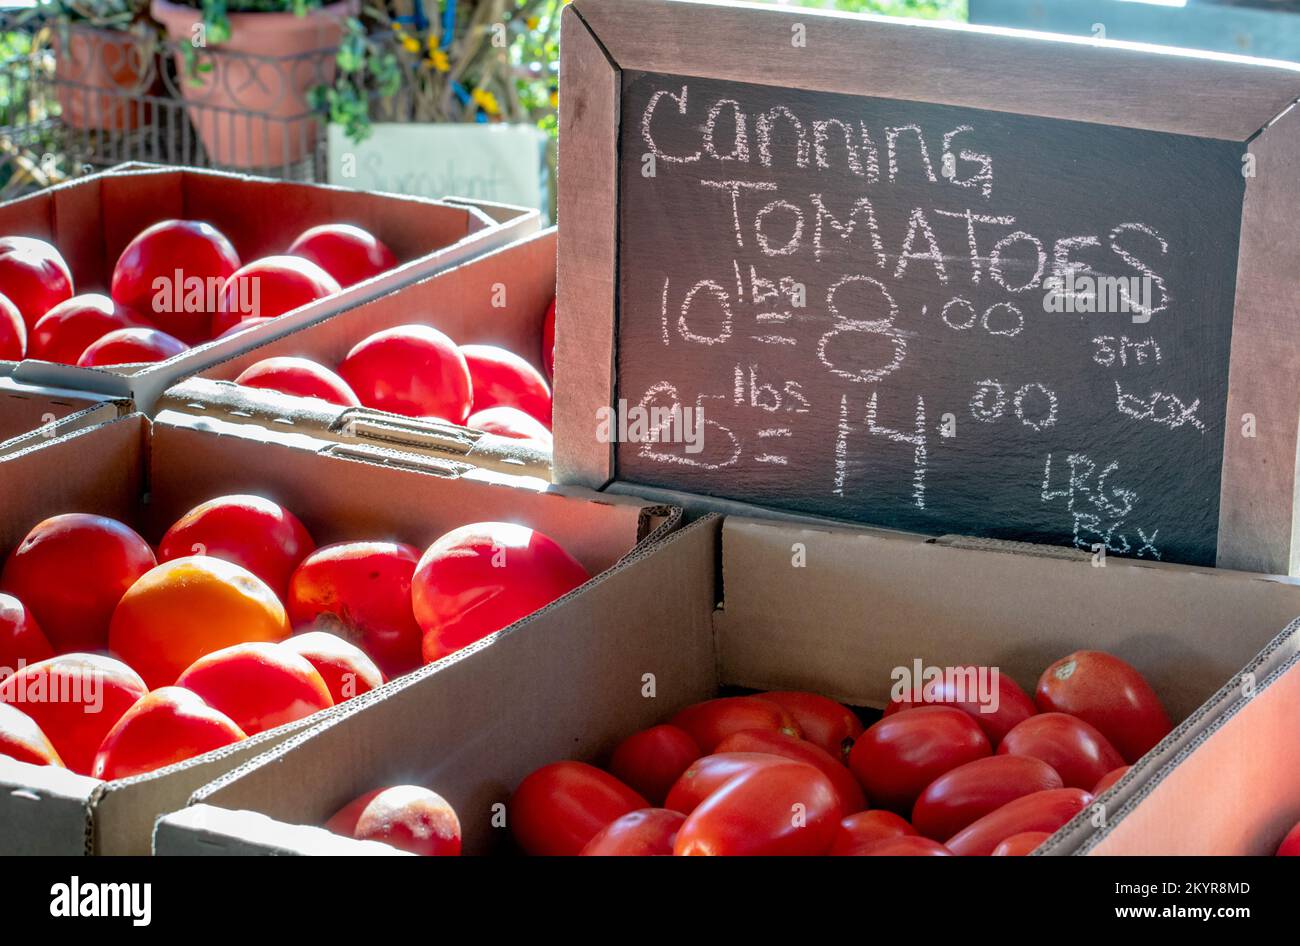 Schachteln mit Tomaten in Dosen werden auf einem frischen Bauernmarkt verkauft, perfekt für Ihr Spezialrezept oder Gläser mit Sauce Stockfoto